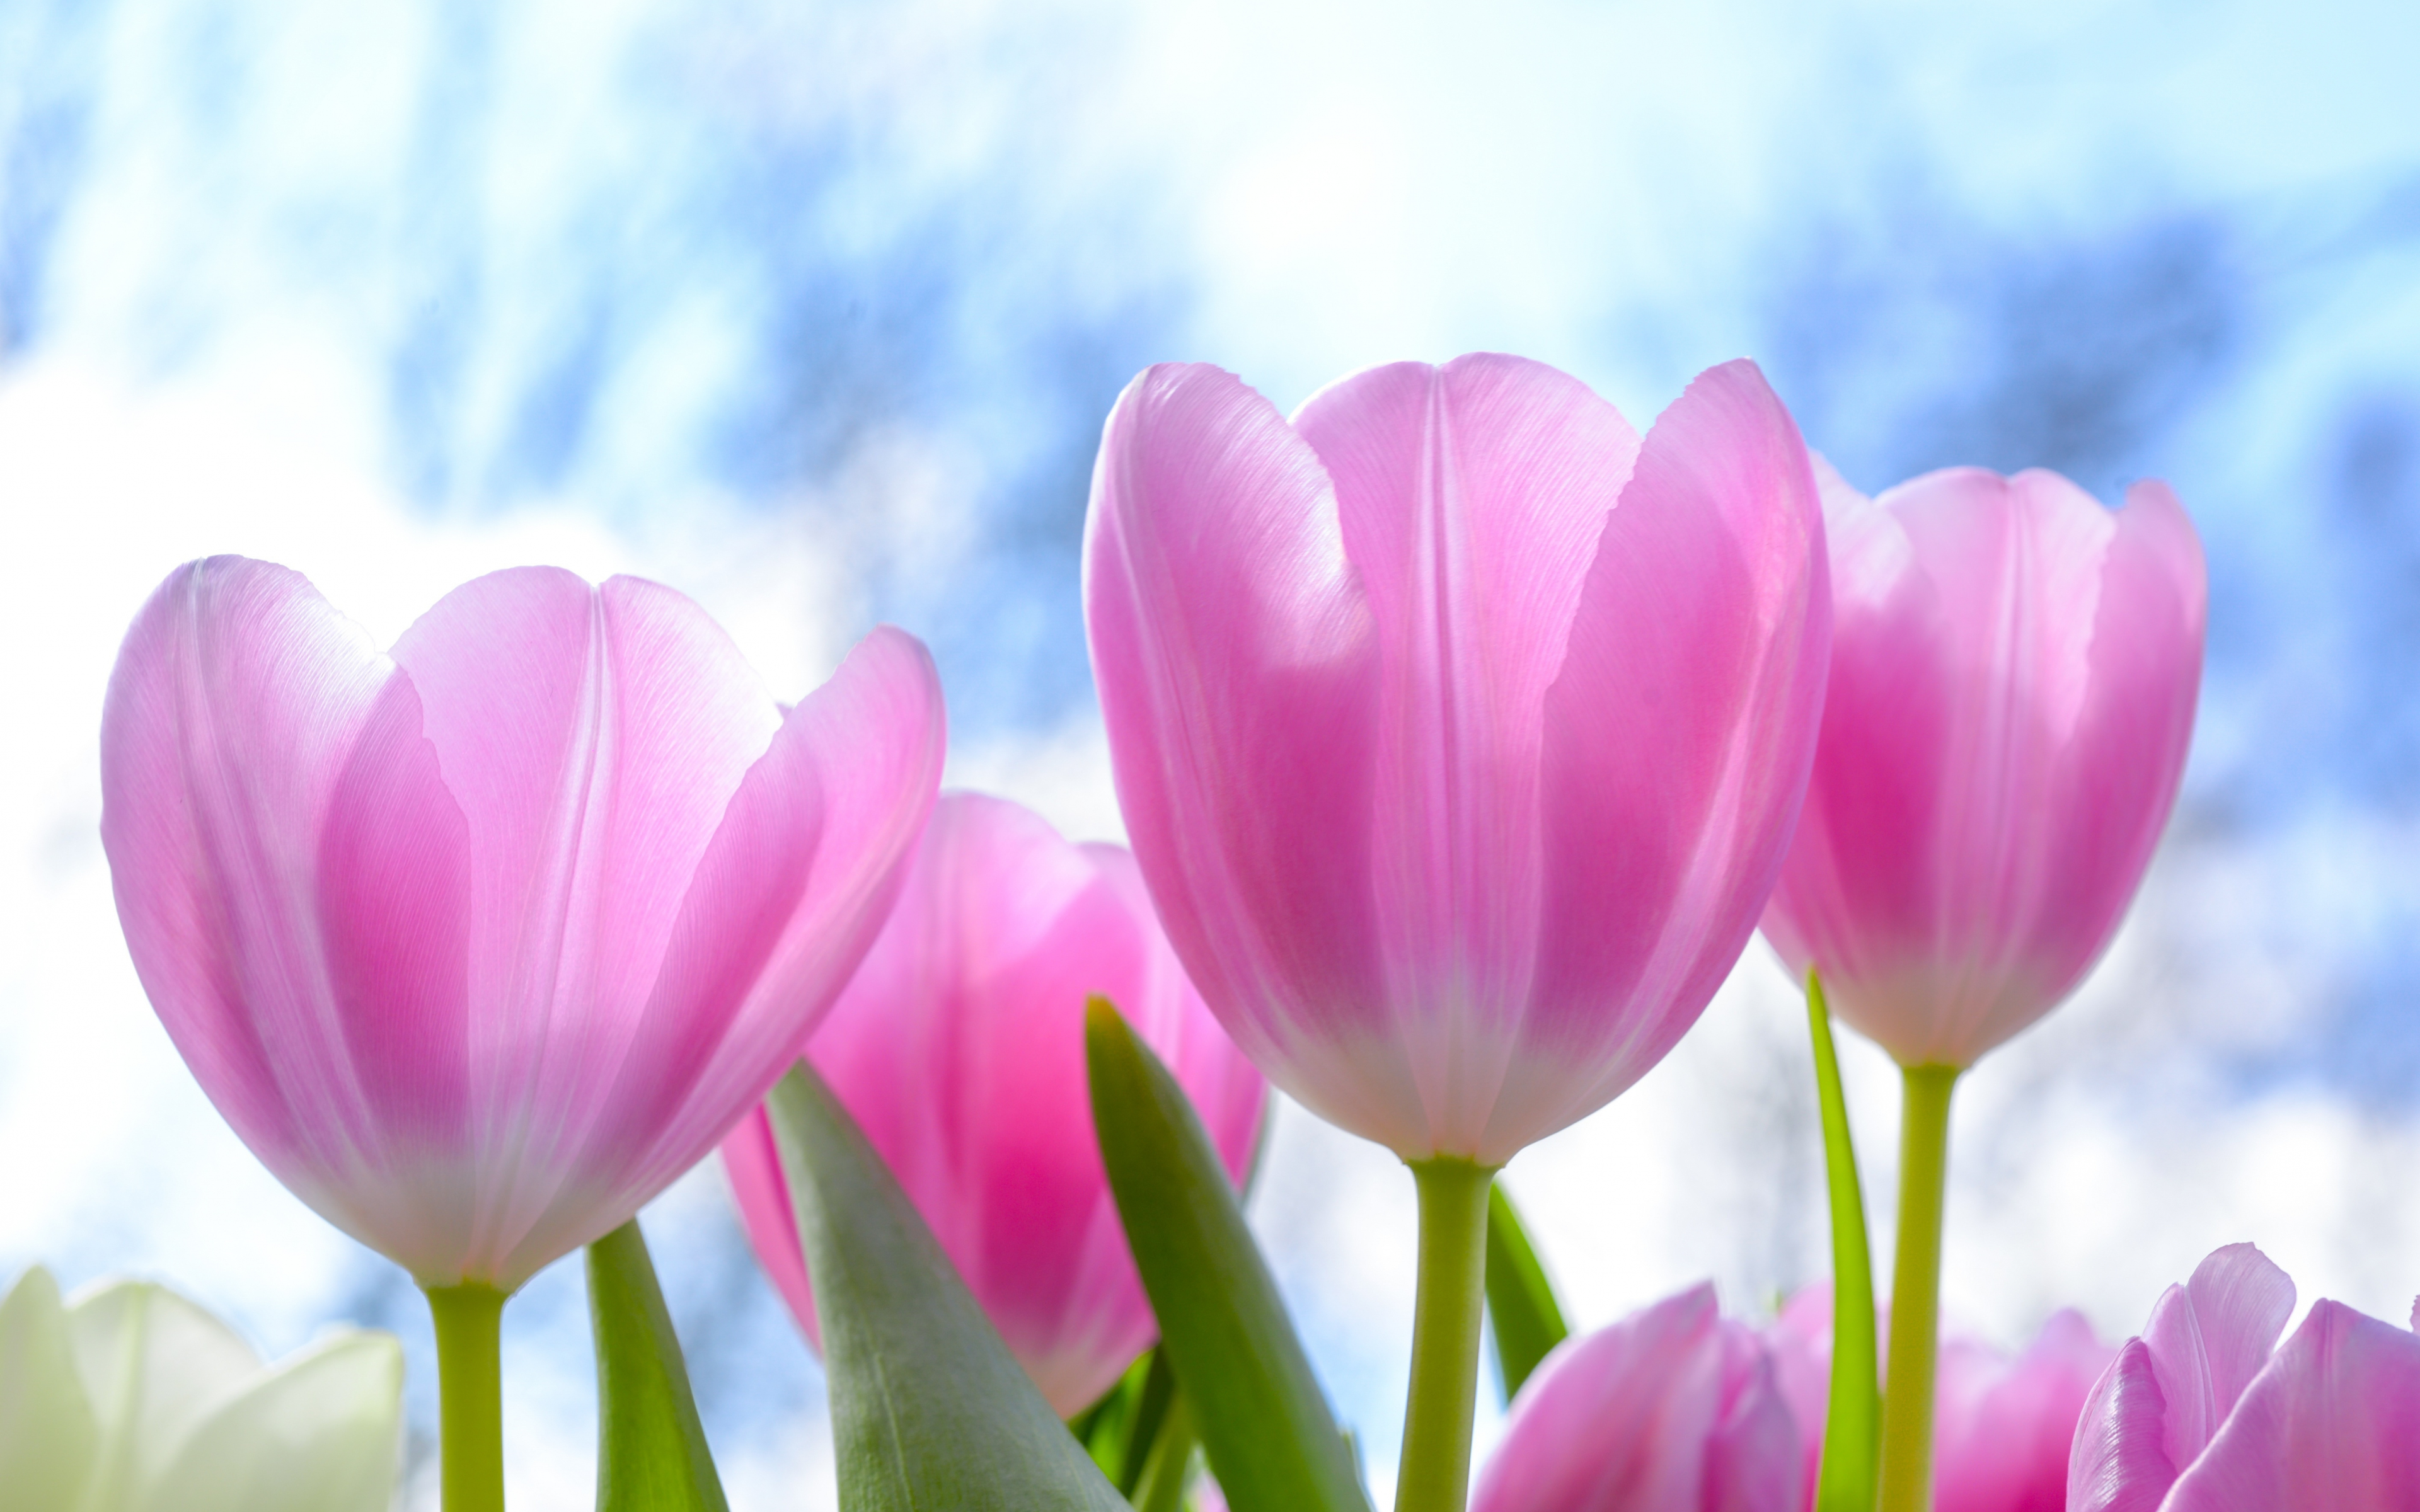 Download 3840x2400 fresh, pink tulips, flowers 4k wallpaper, 4k, ultra hd 16:10 wallpaper